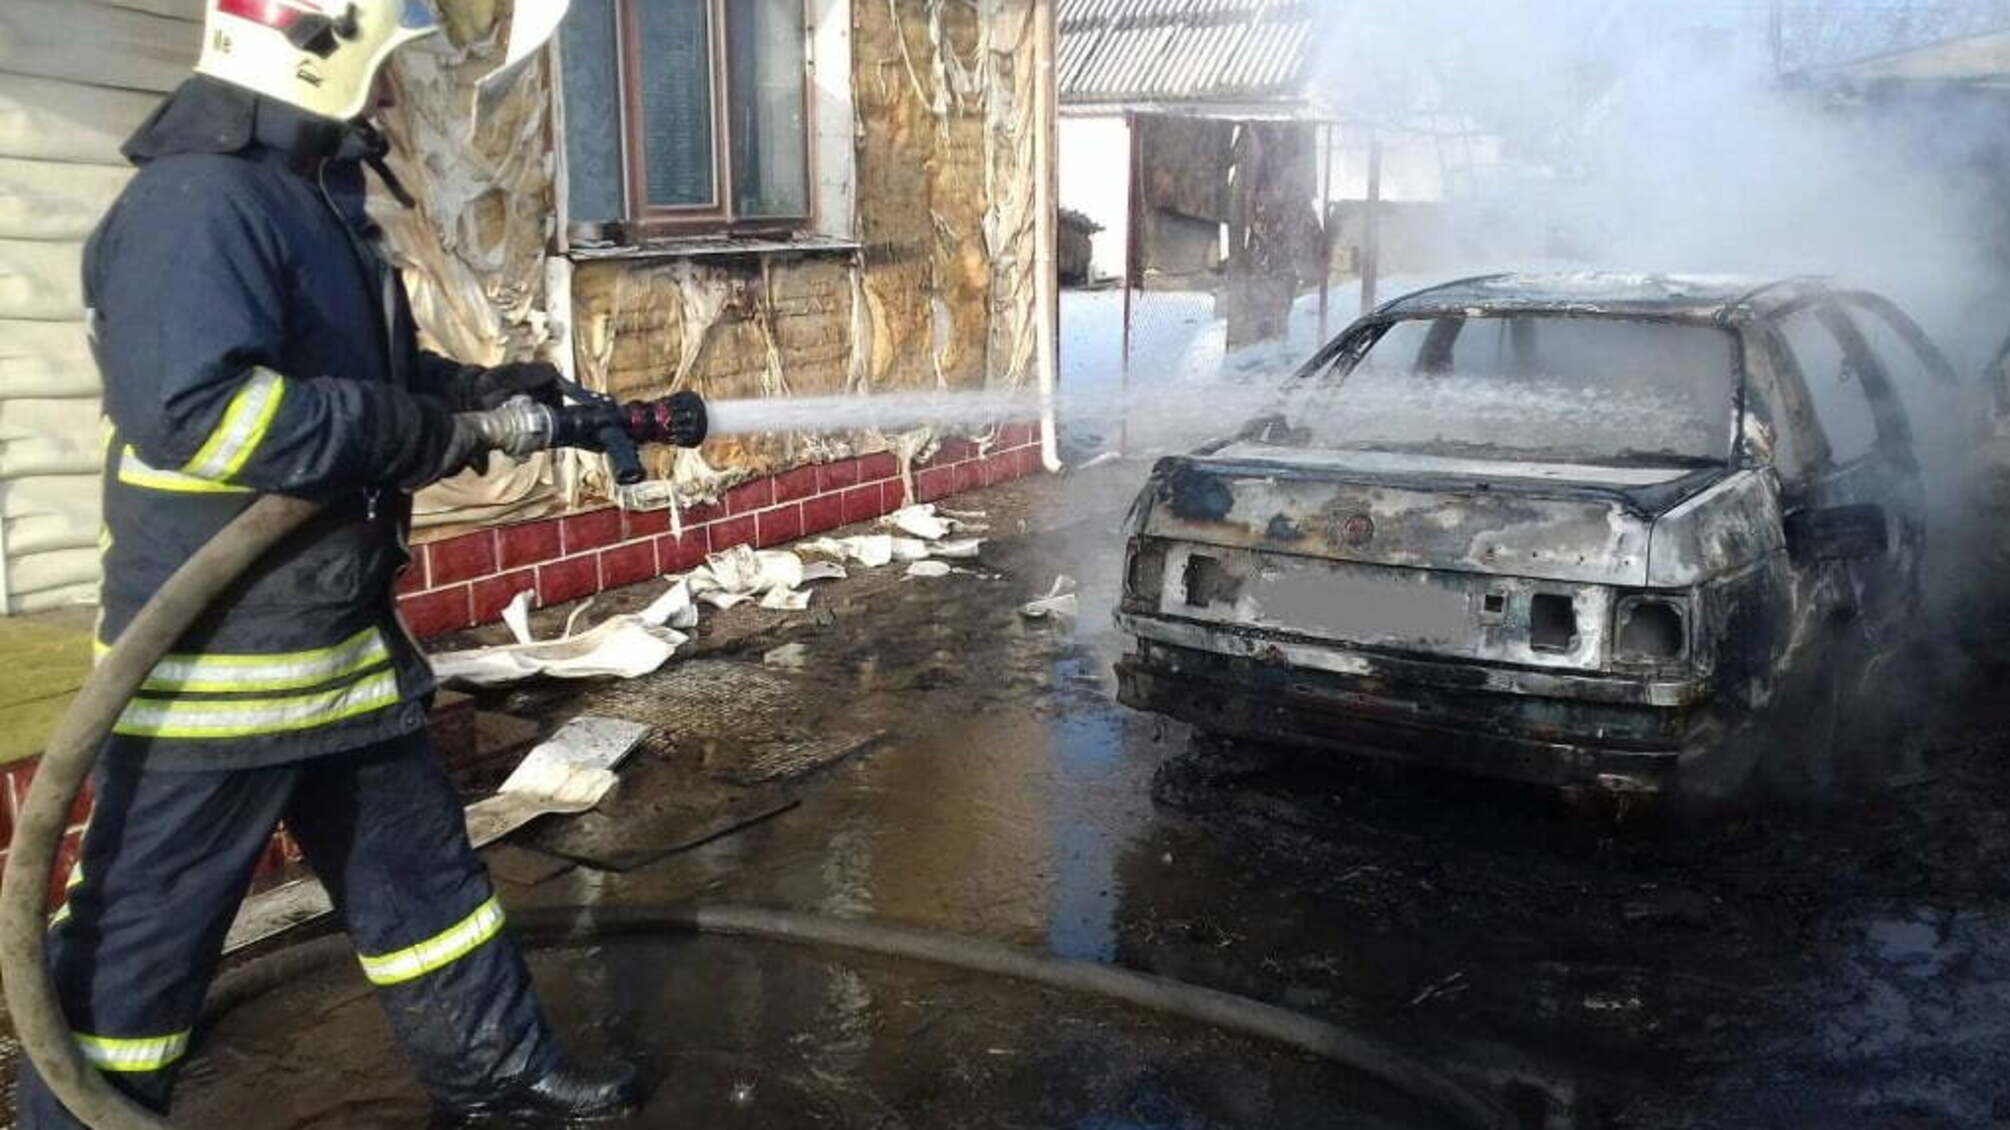 Житомирська область: вогнеборців врятували будинок, на який перекинувся вогонь з палаючого автомобіля